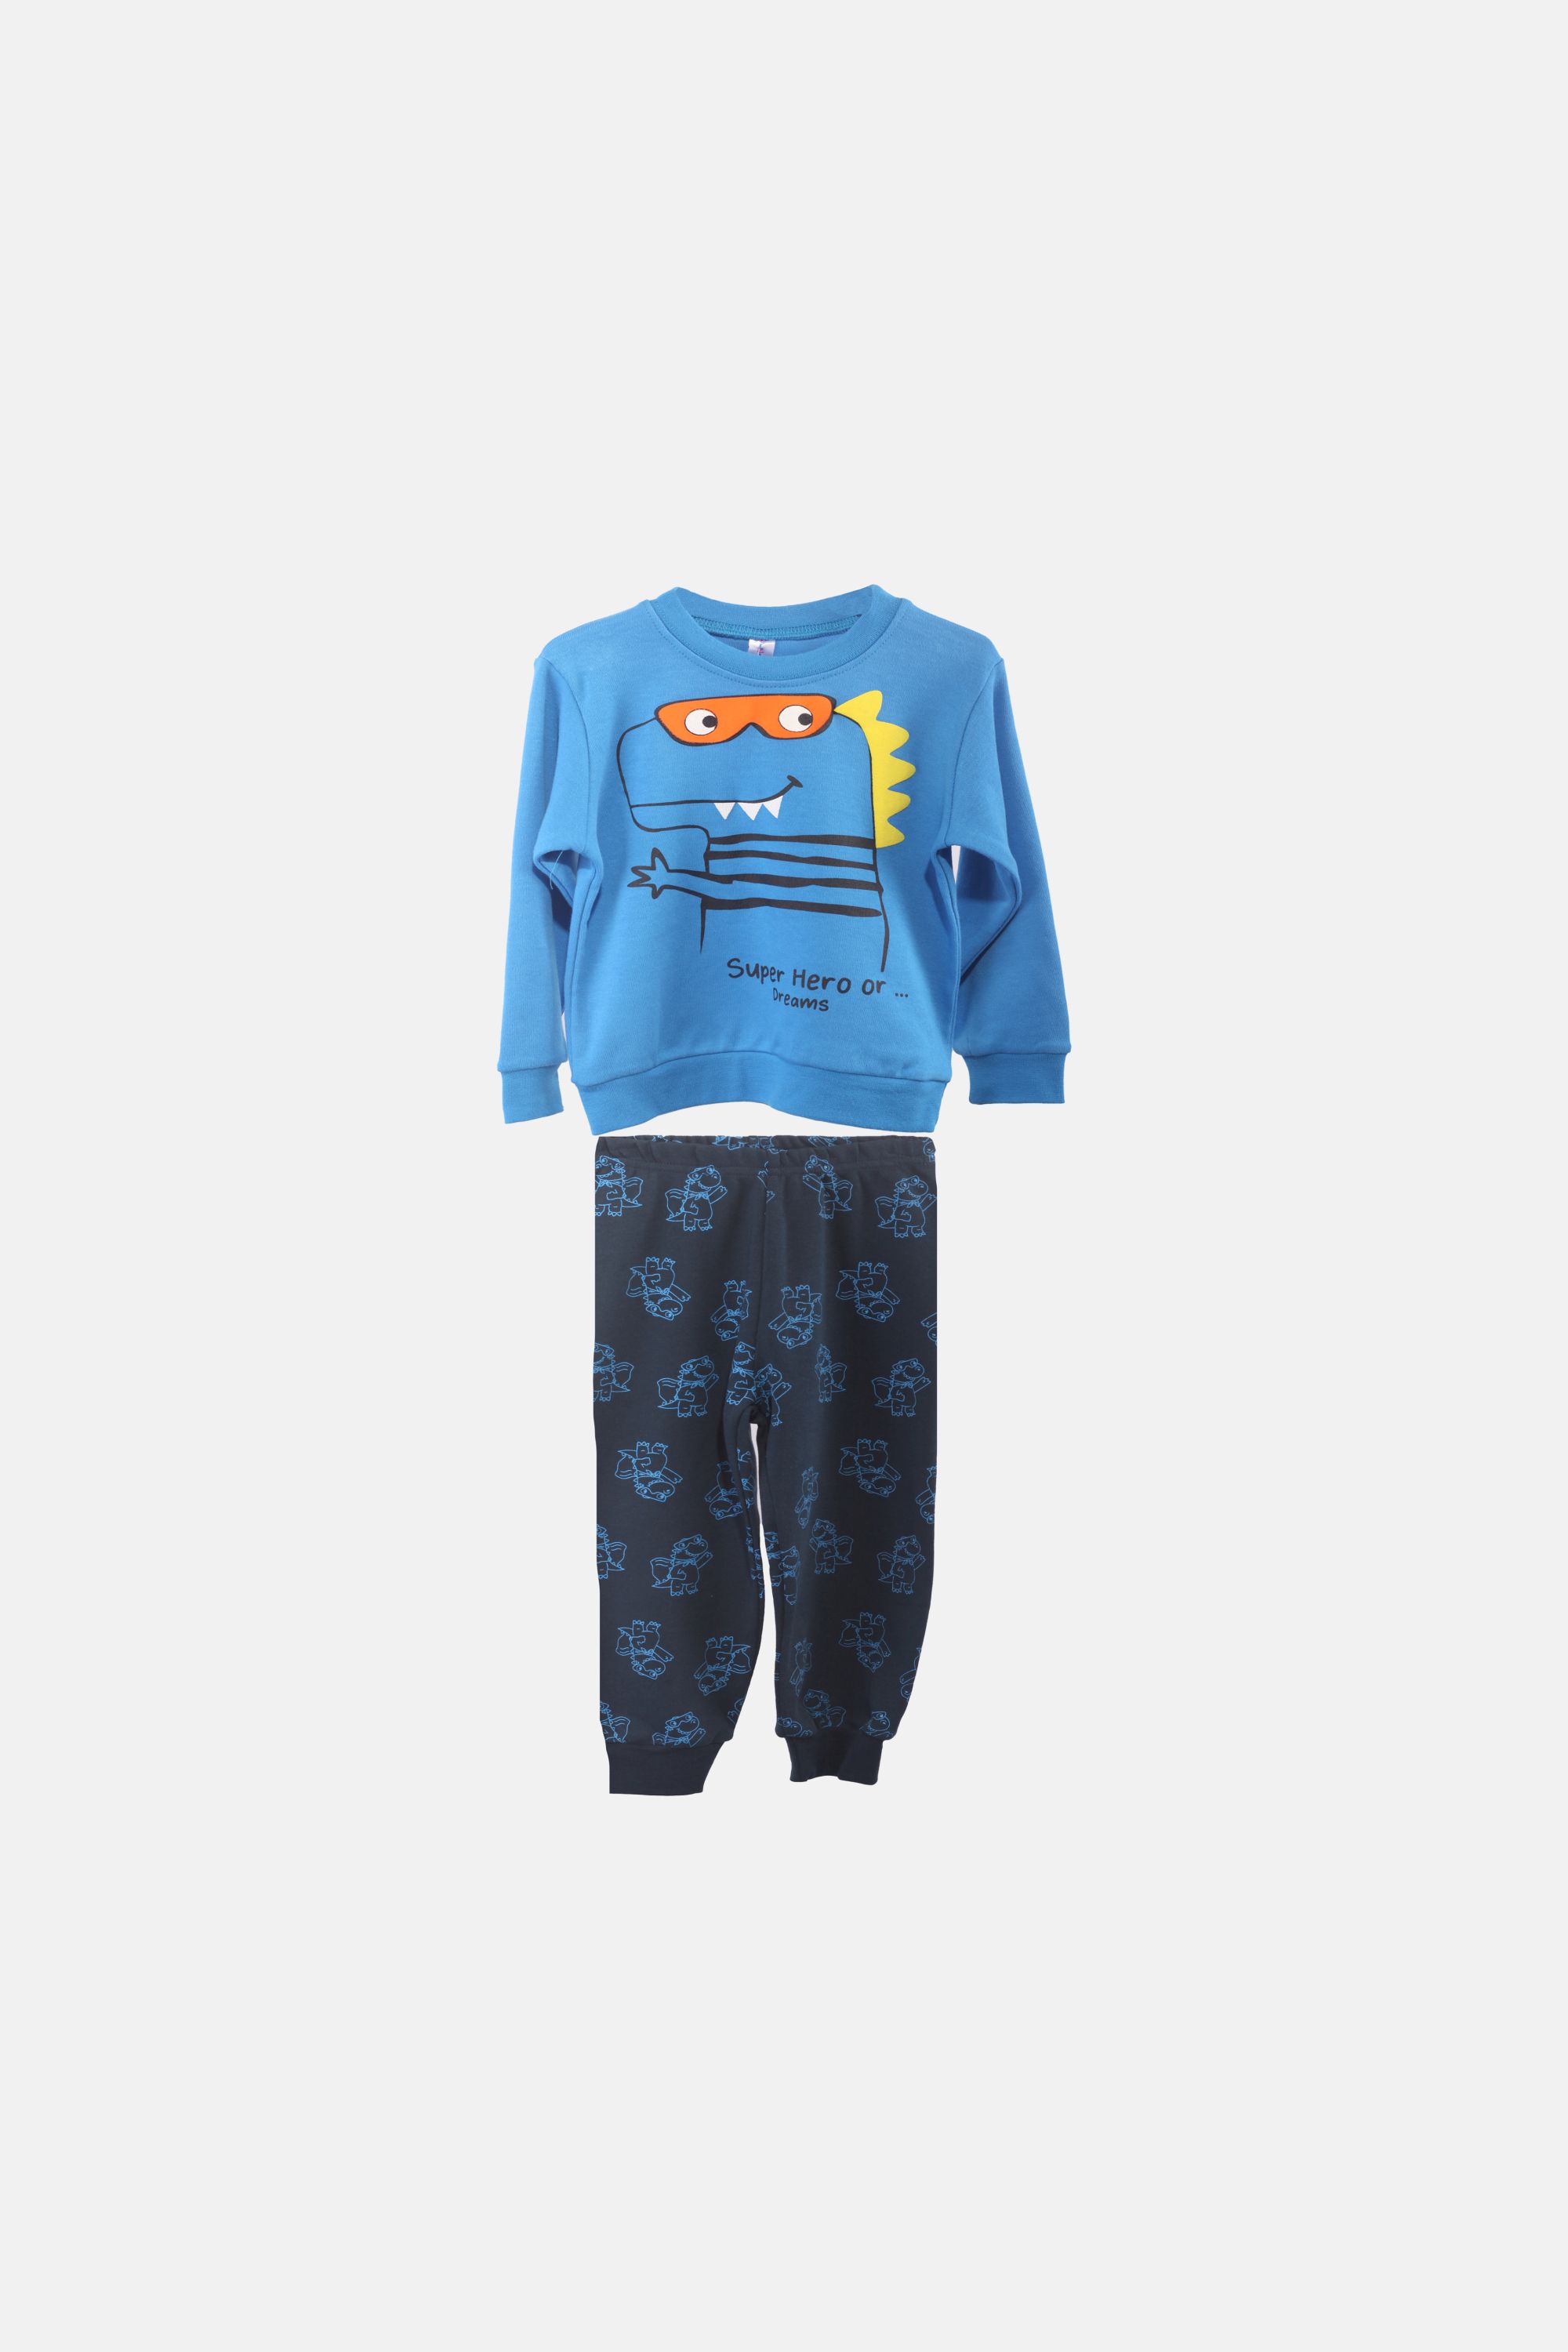 Chlapecké bavlněné pyžamo "DINO SET"/Modrá, petrolejová Barva: Modrá, Velikost: vel. 1 (78/86 cm)